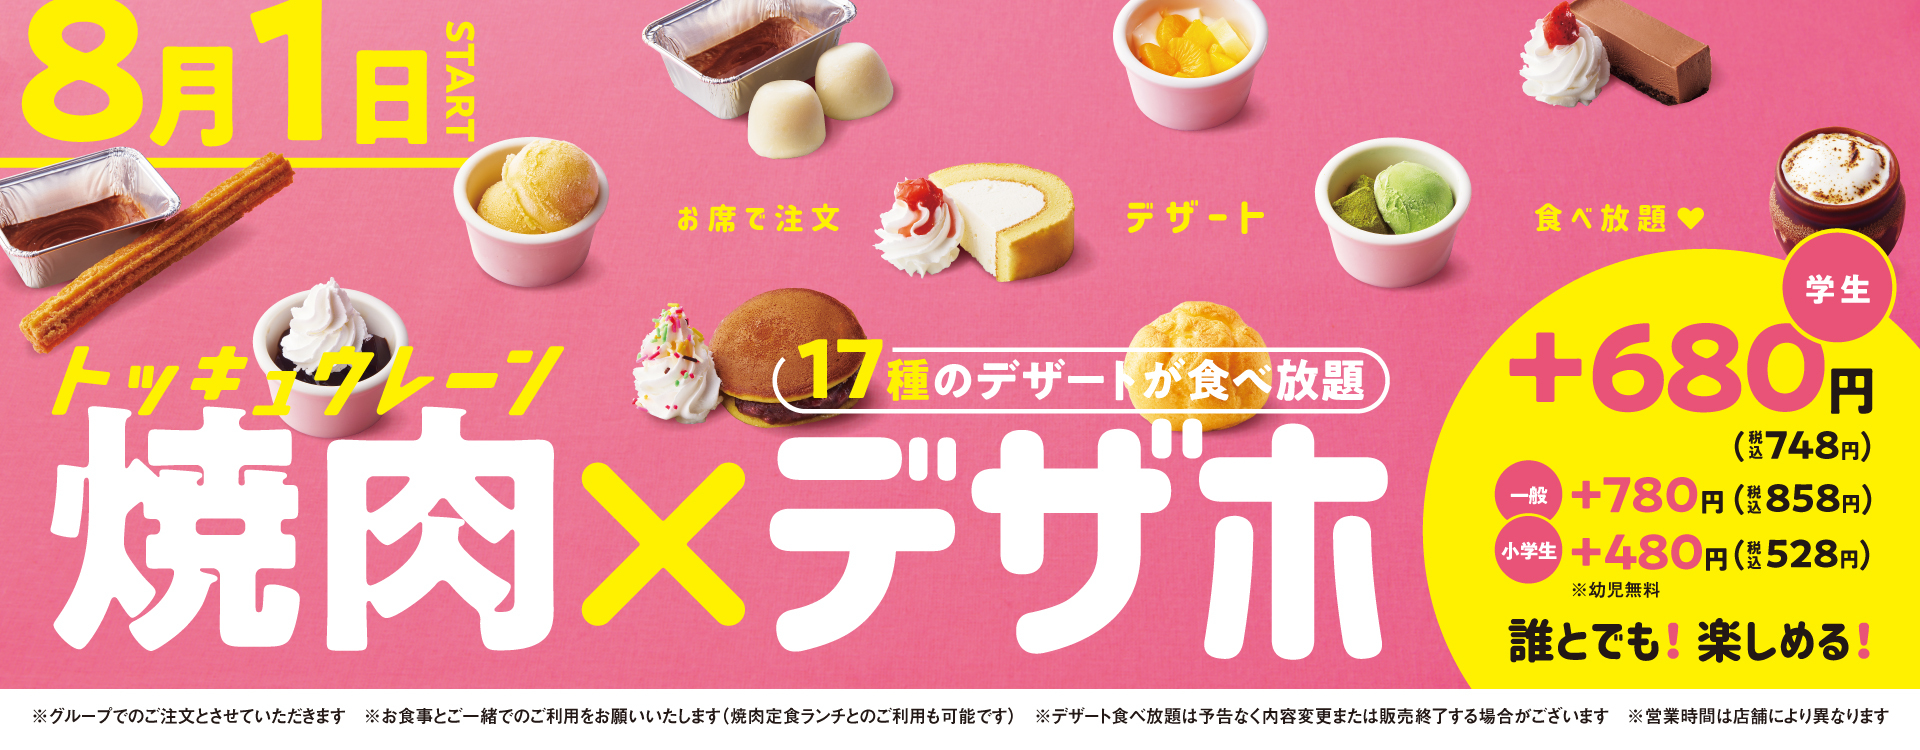 17種のデザート食べ放題が780円(税込858円)